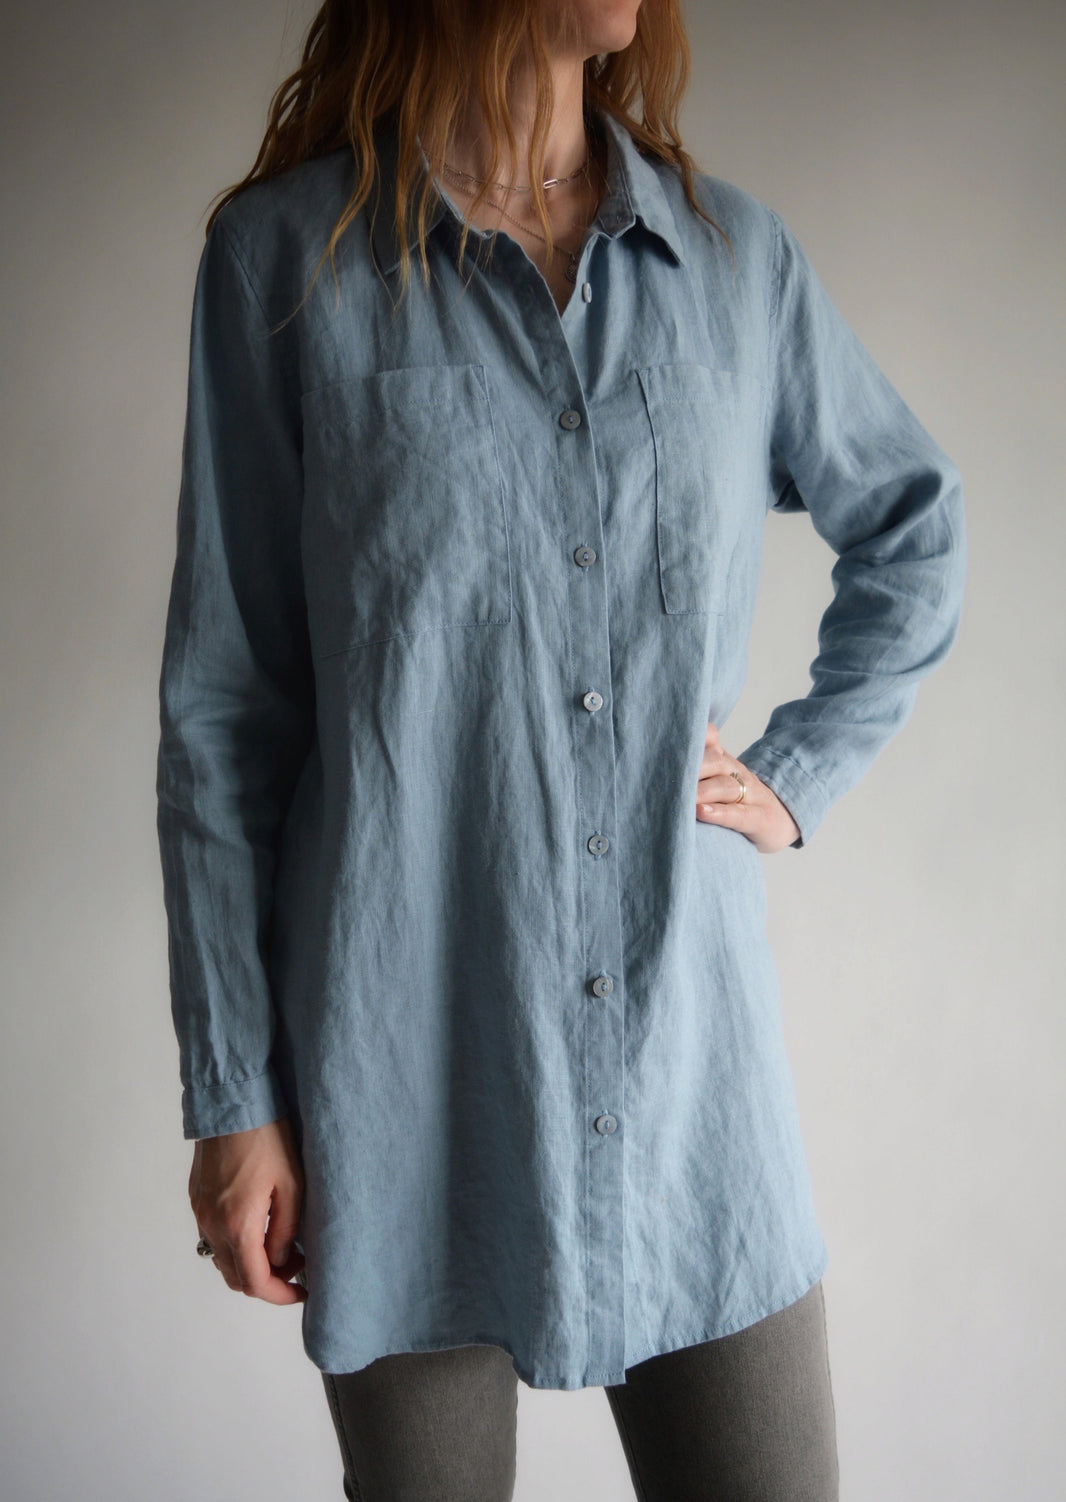 Moon Mountain Eco Fashion: Linen & Cotton Apparel, Bath, Bedding